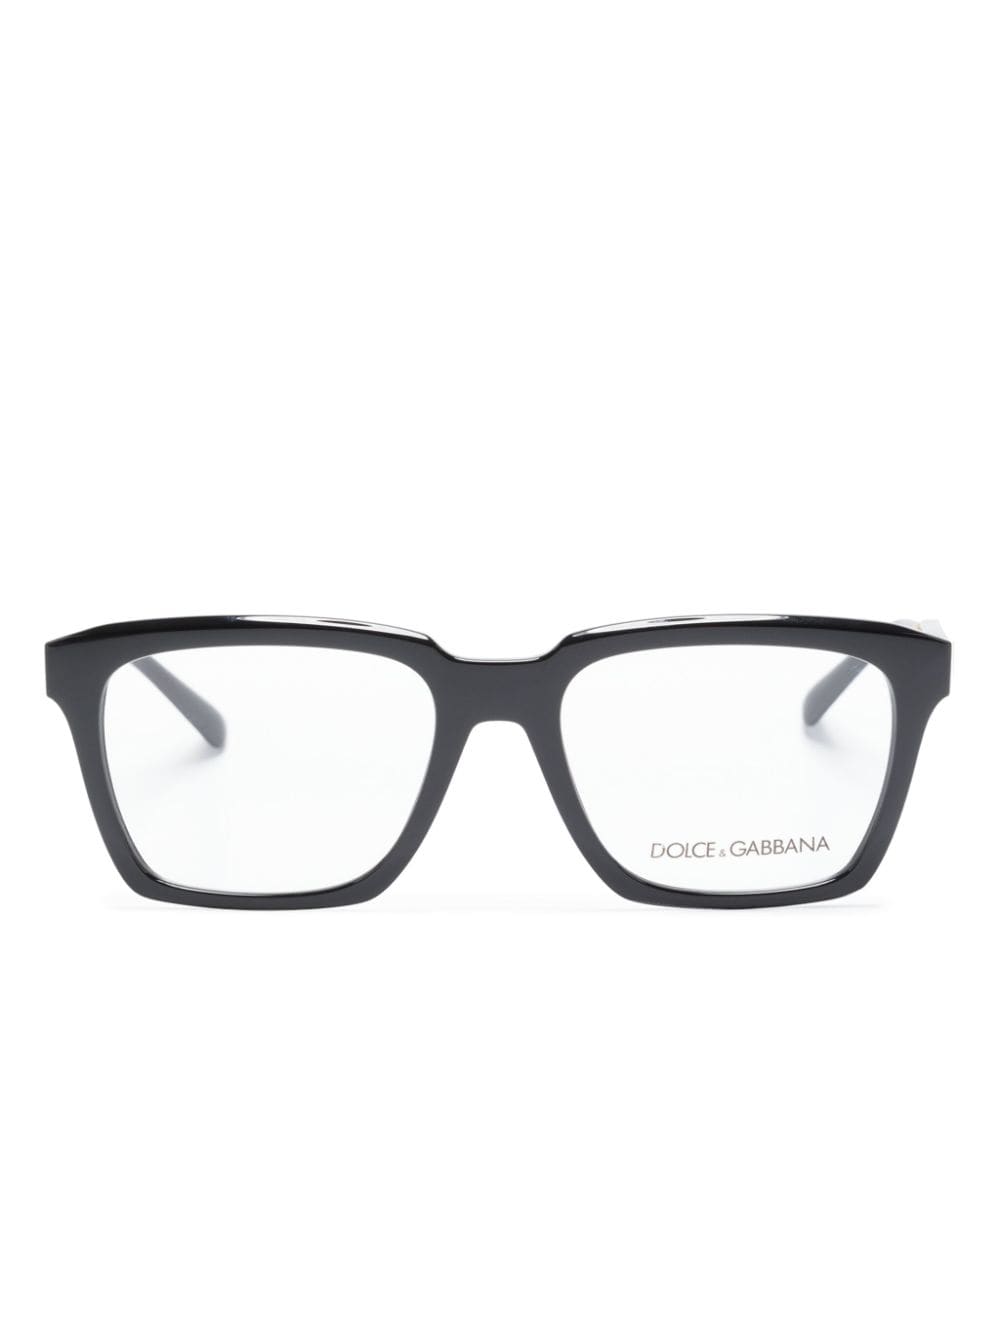 DG5104 square-frame glasses